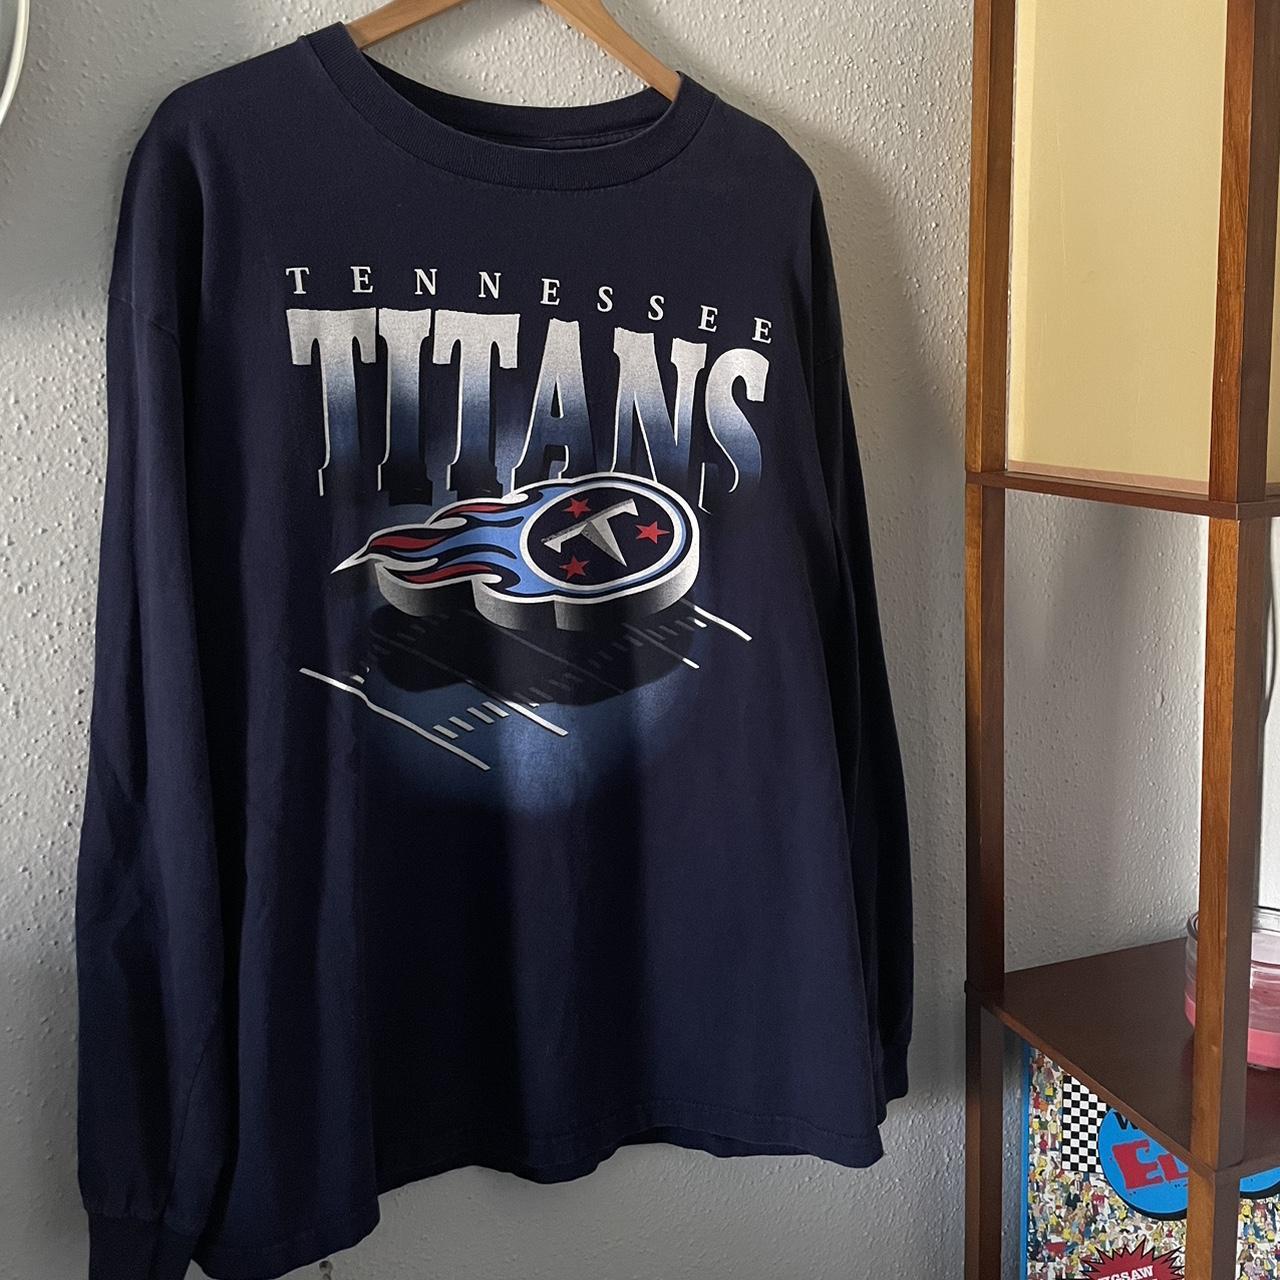 tennessee titans sweatshirt vintage